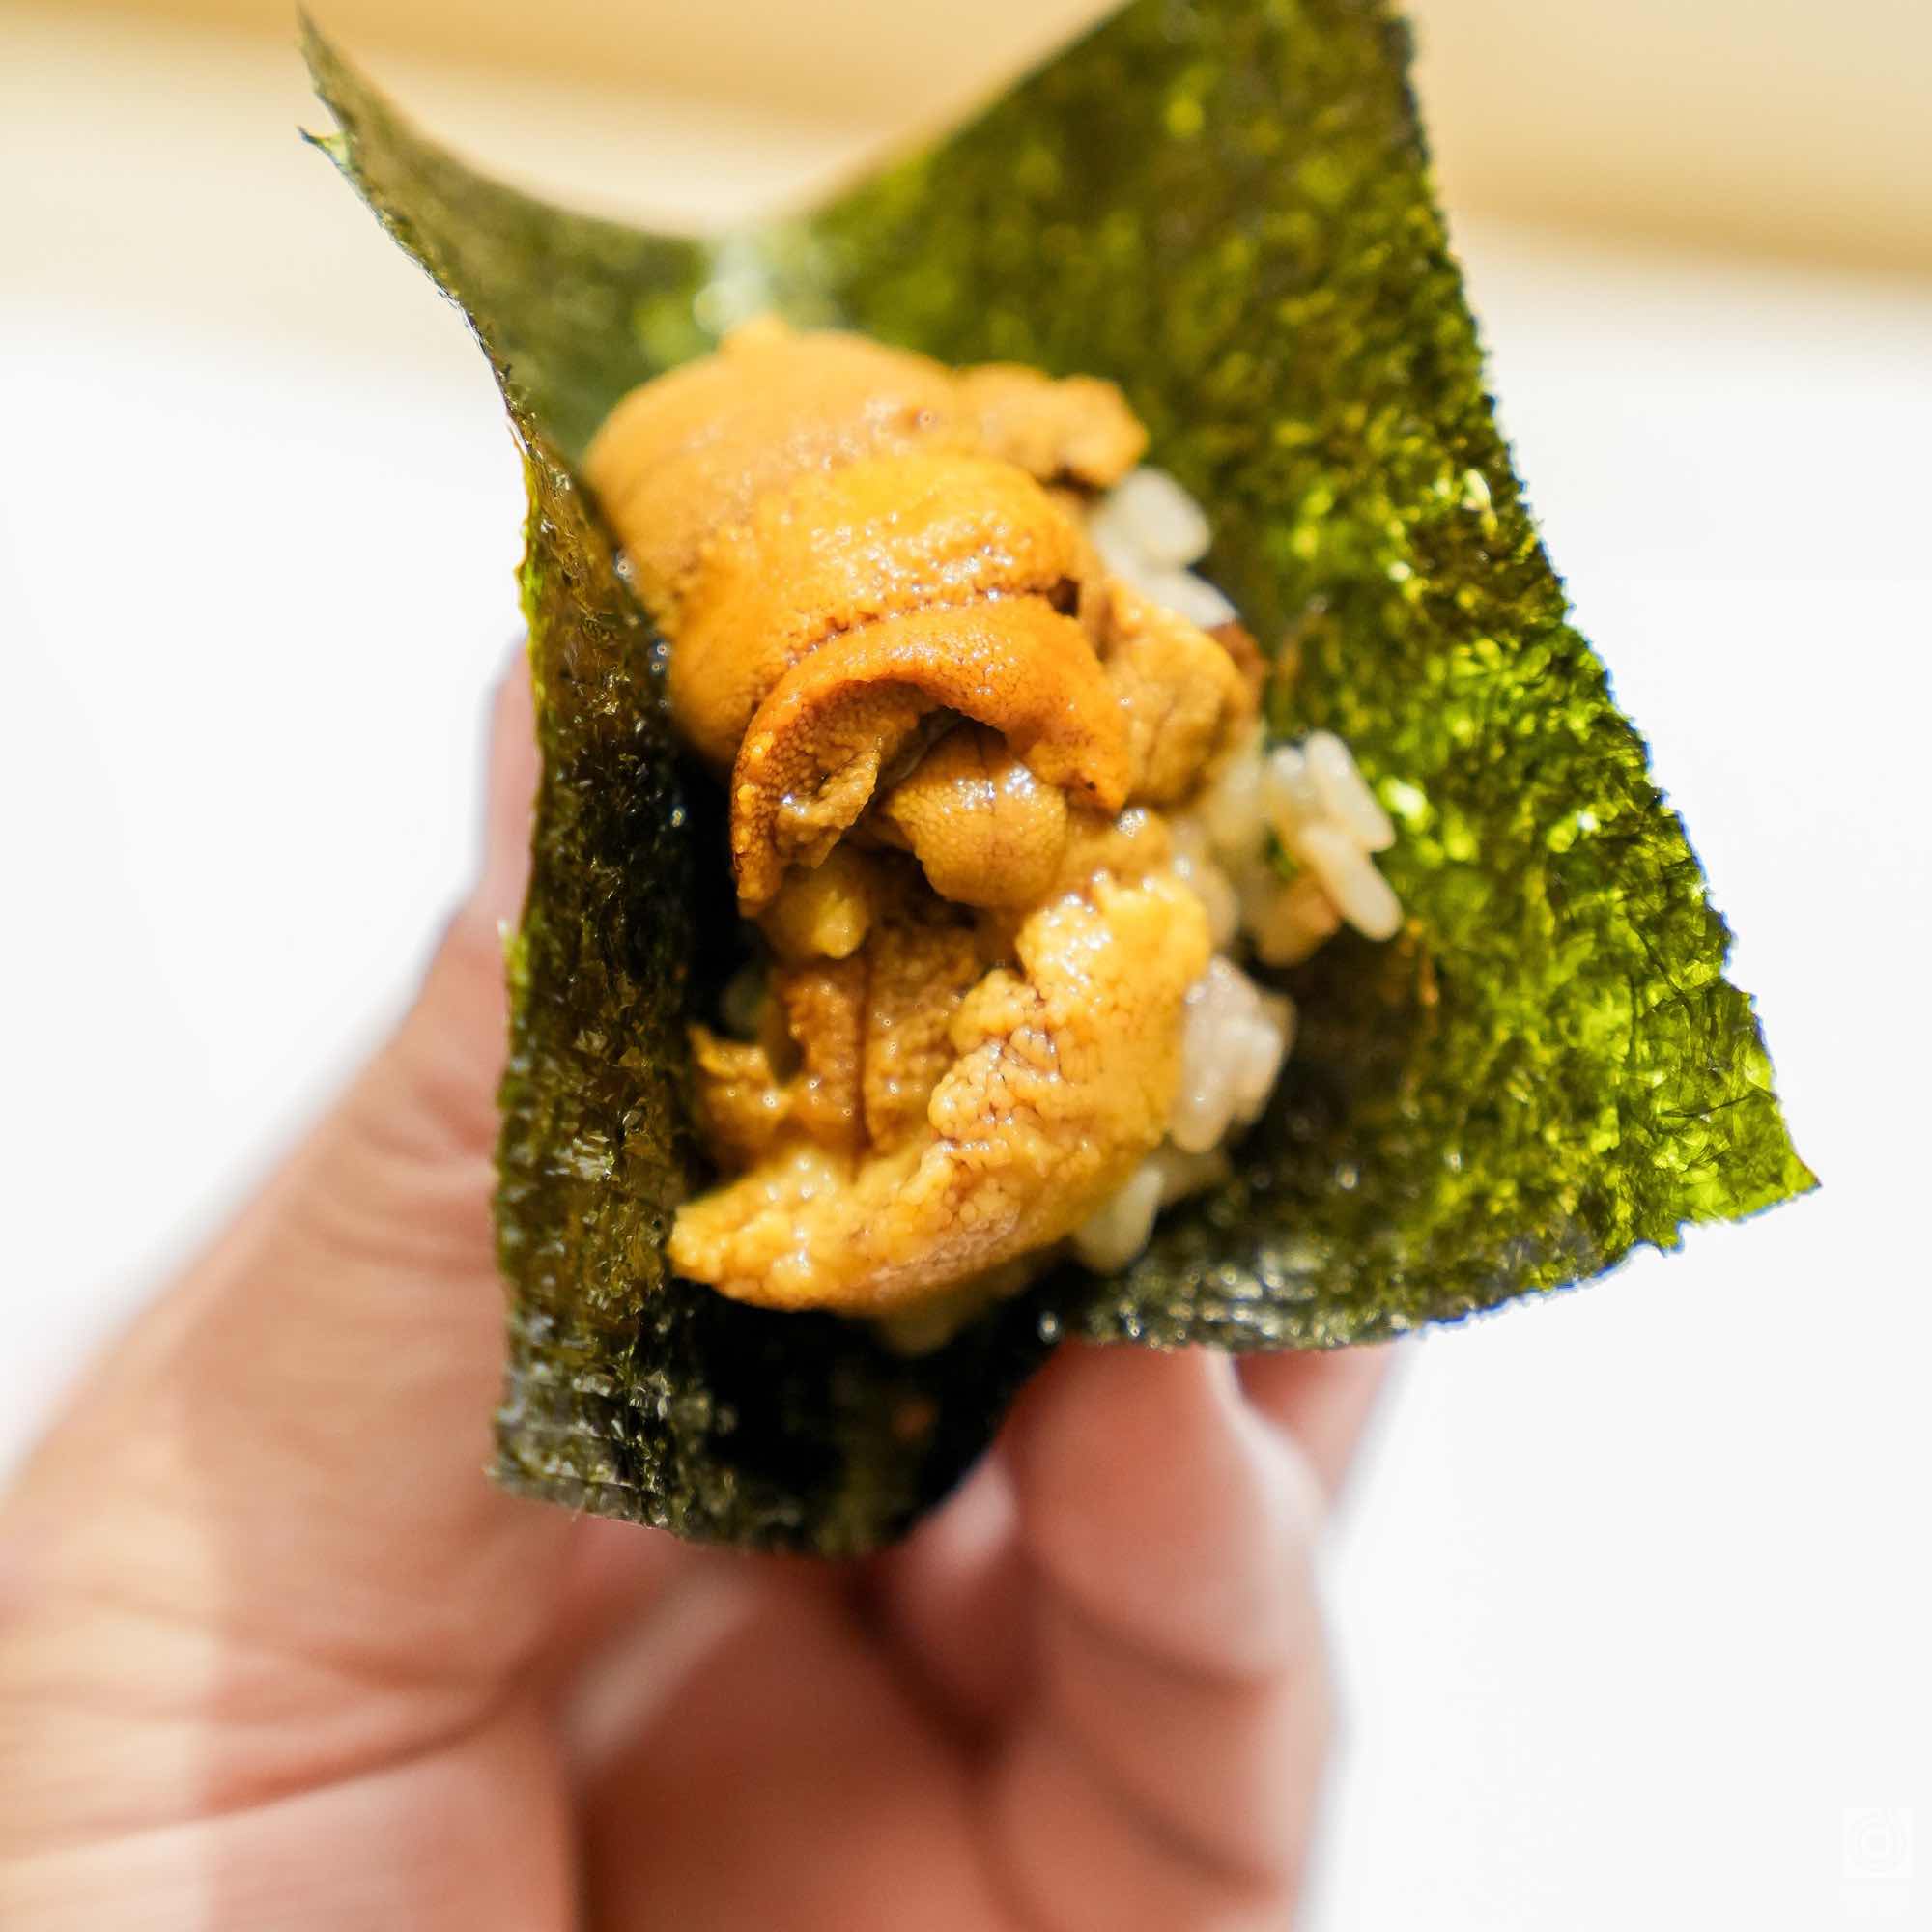 神奈川県 横浜市・経験豊かな大将が辿り着いた削ぎ落とした美味しさ。「鮨 七海」の寿司の魅力を味わう。